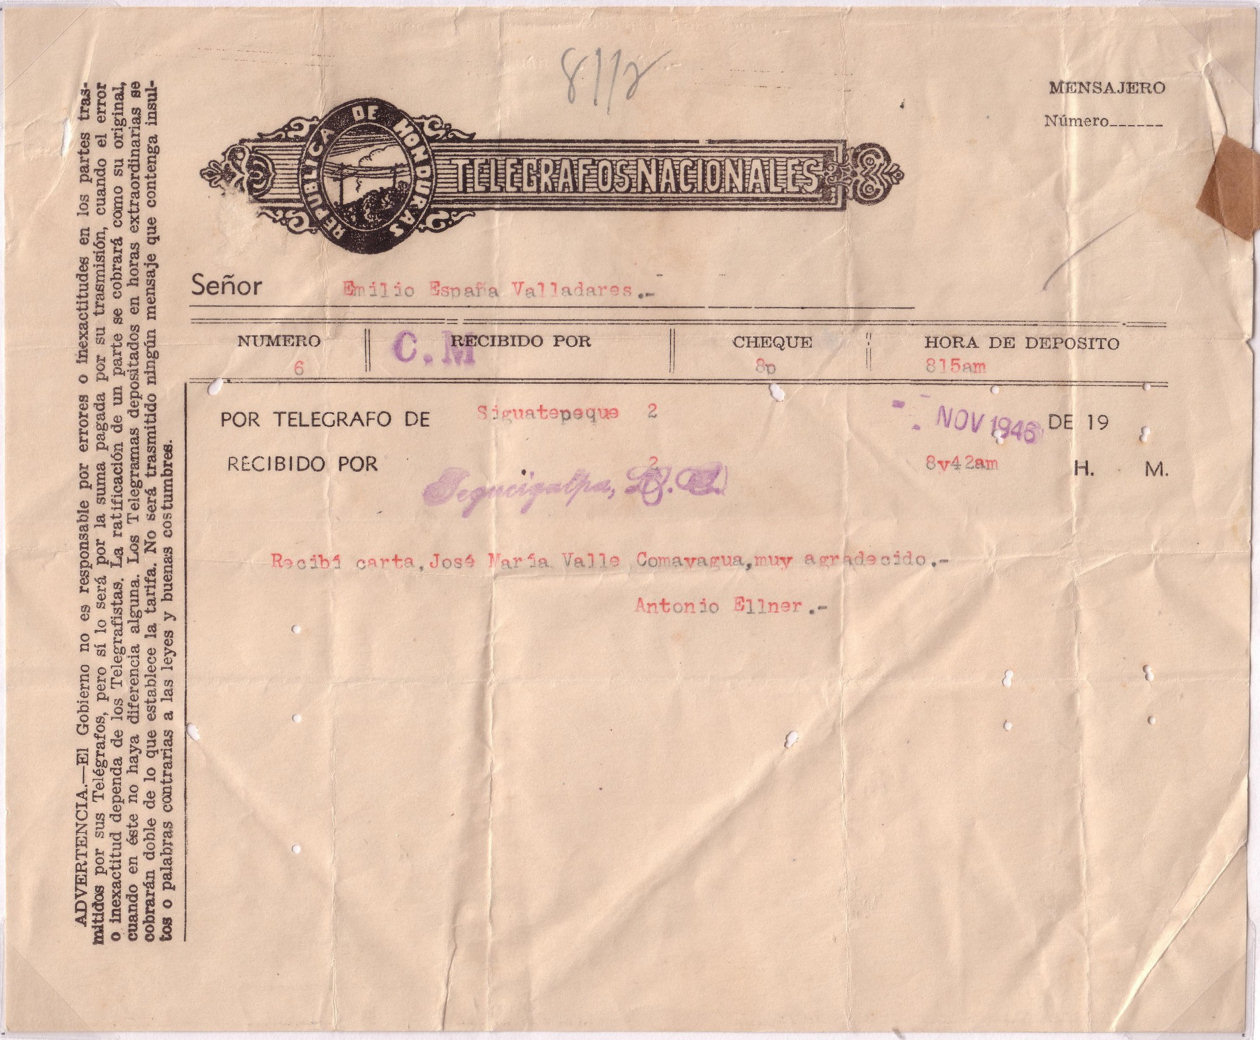 Telegram of November 1946